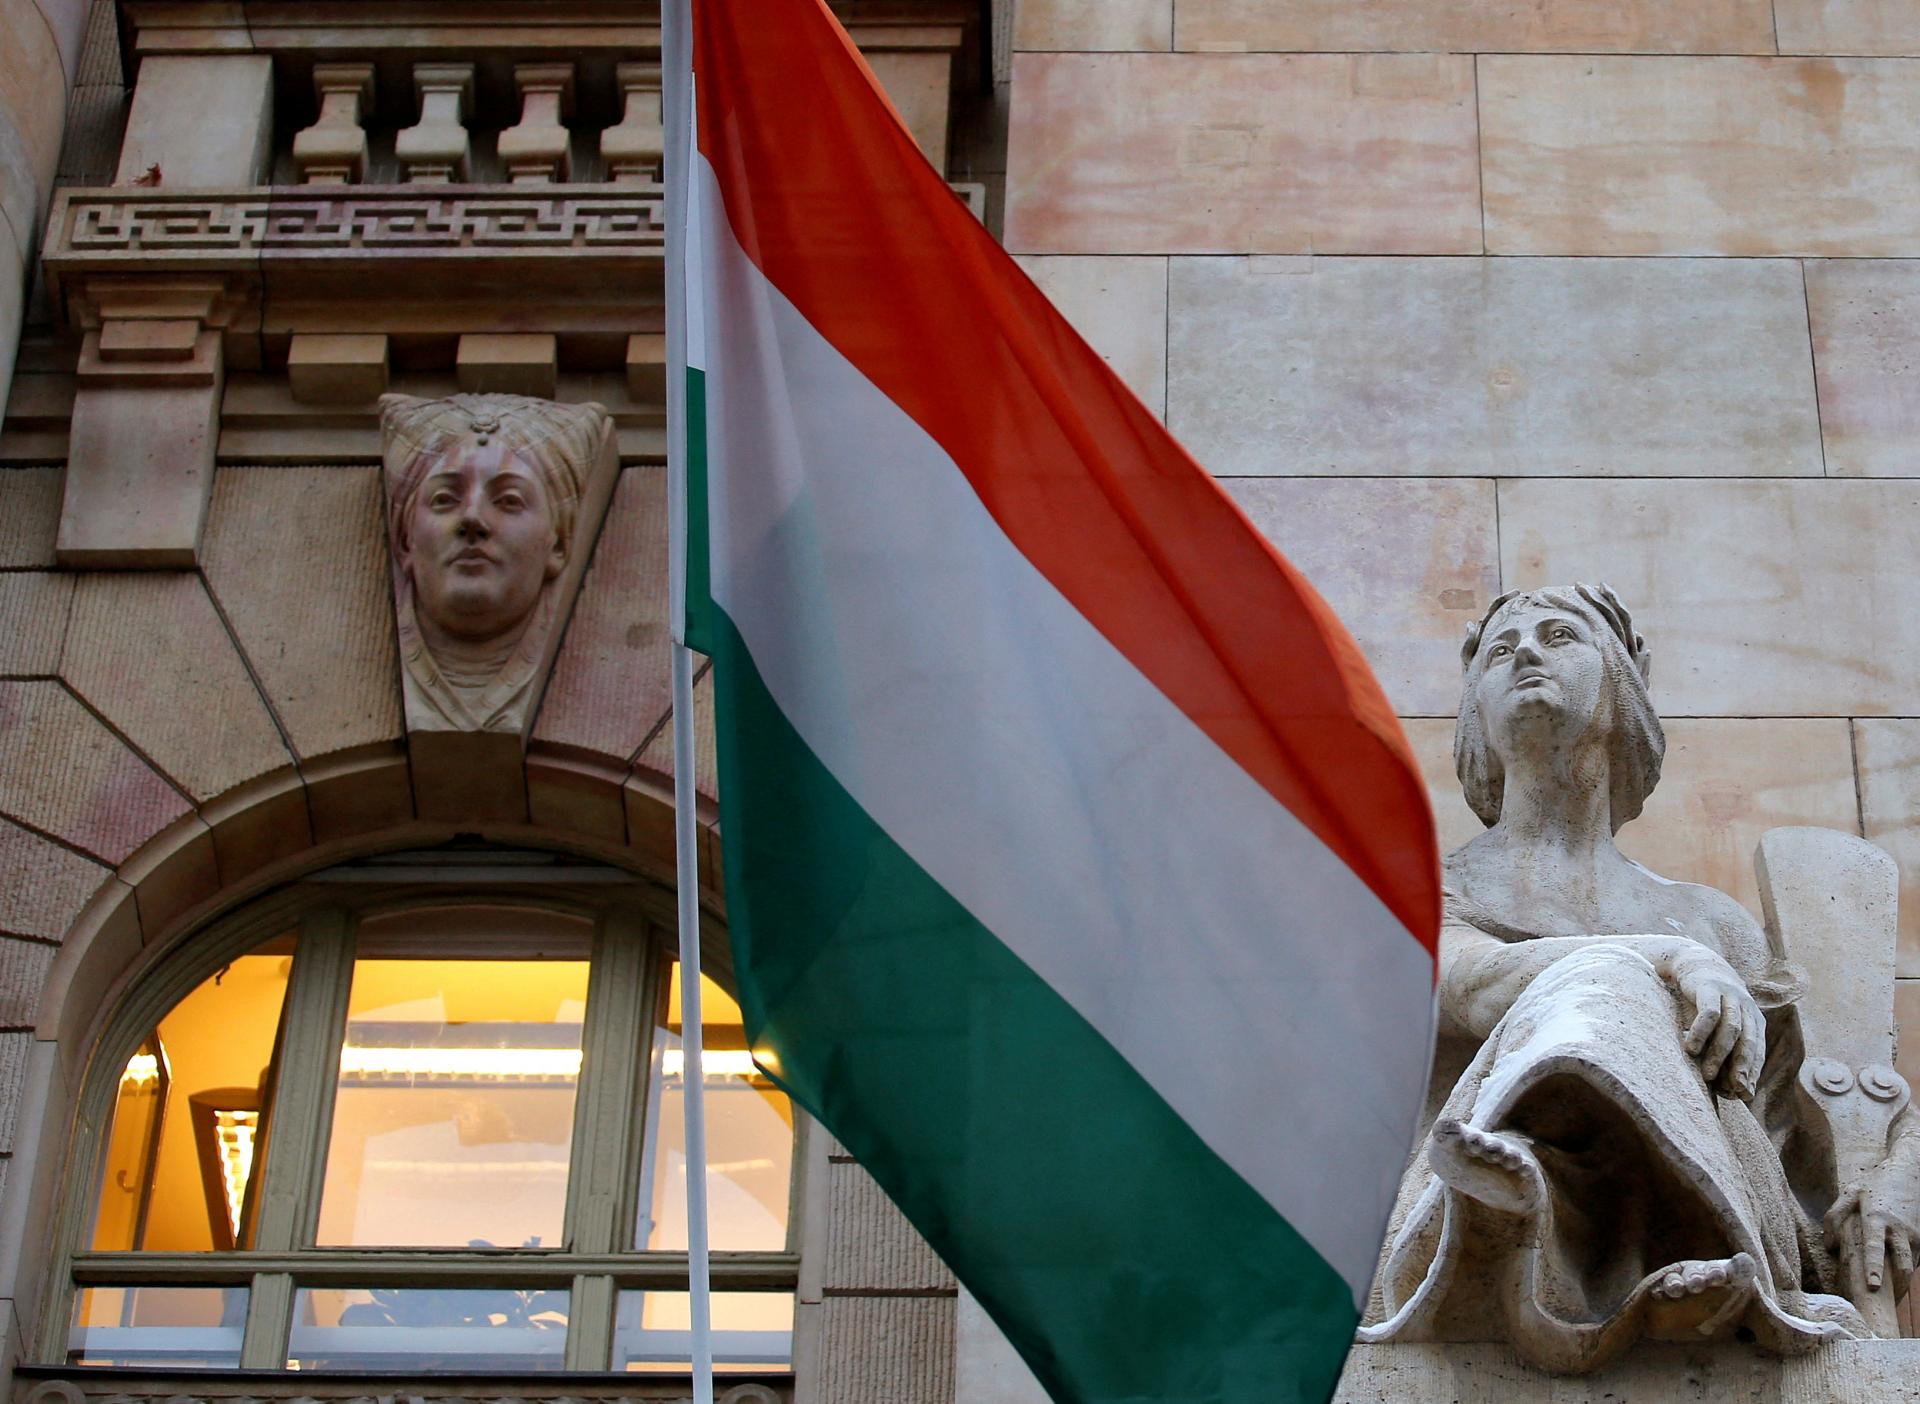 Maďari majú strach z inflácie. Masovo vyberajú peniaze z bánk a nakupujú vládne dlhopisy